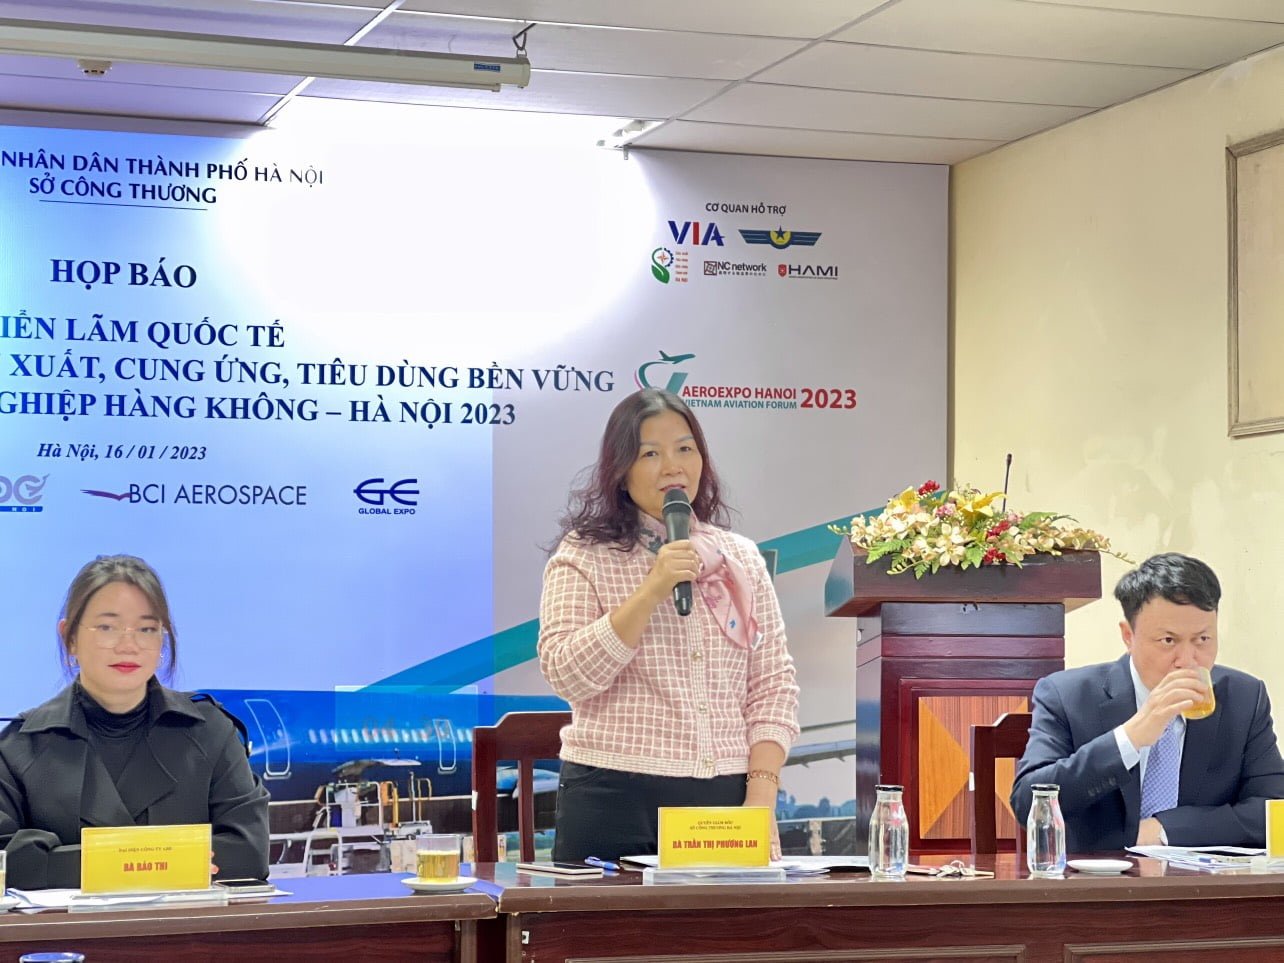 SPCNCL Hà Nội: Doanh nghiệp chủ lực sẽ tham gia Hội chợ triển lãm ngành công nghiệp hàng không tại Hà Nội